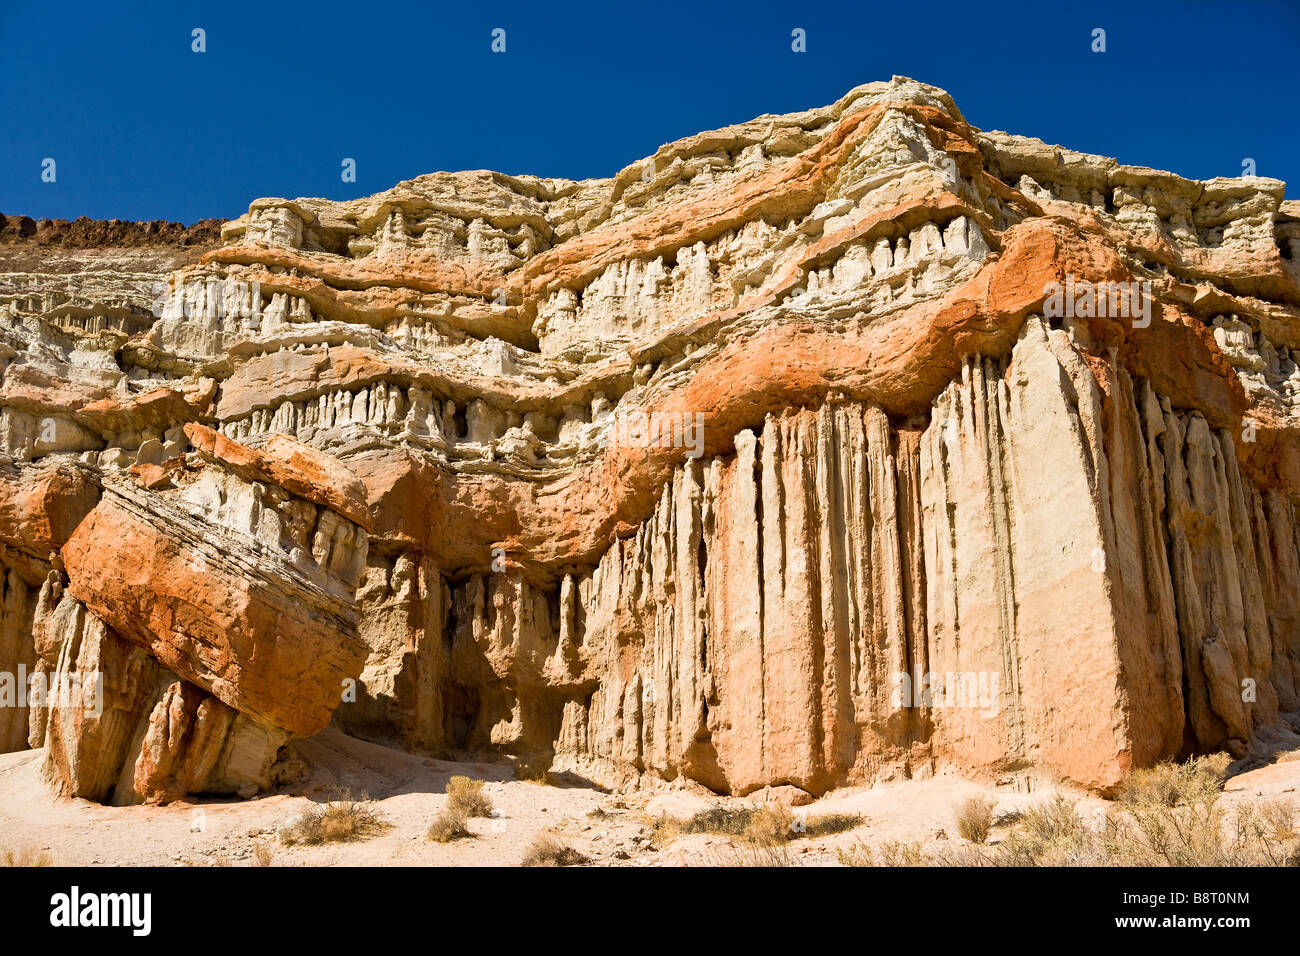 Sedimentgestein Bildung Red Rock Canyon State Park California Untied Staaten von Amerika Stockfoto